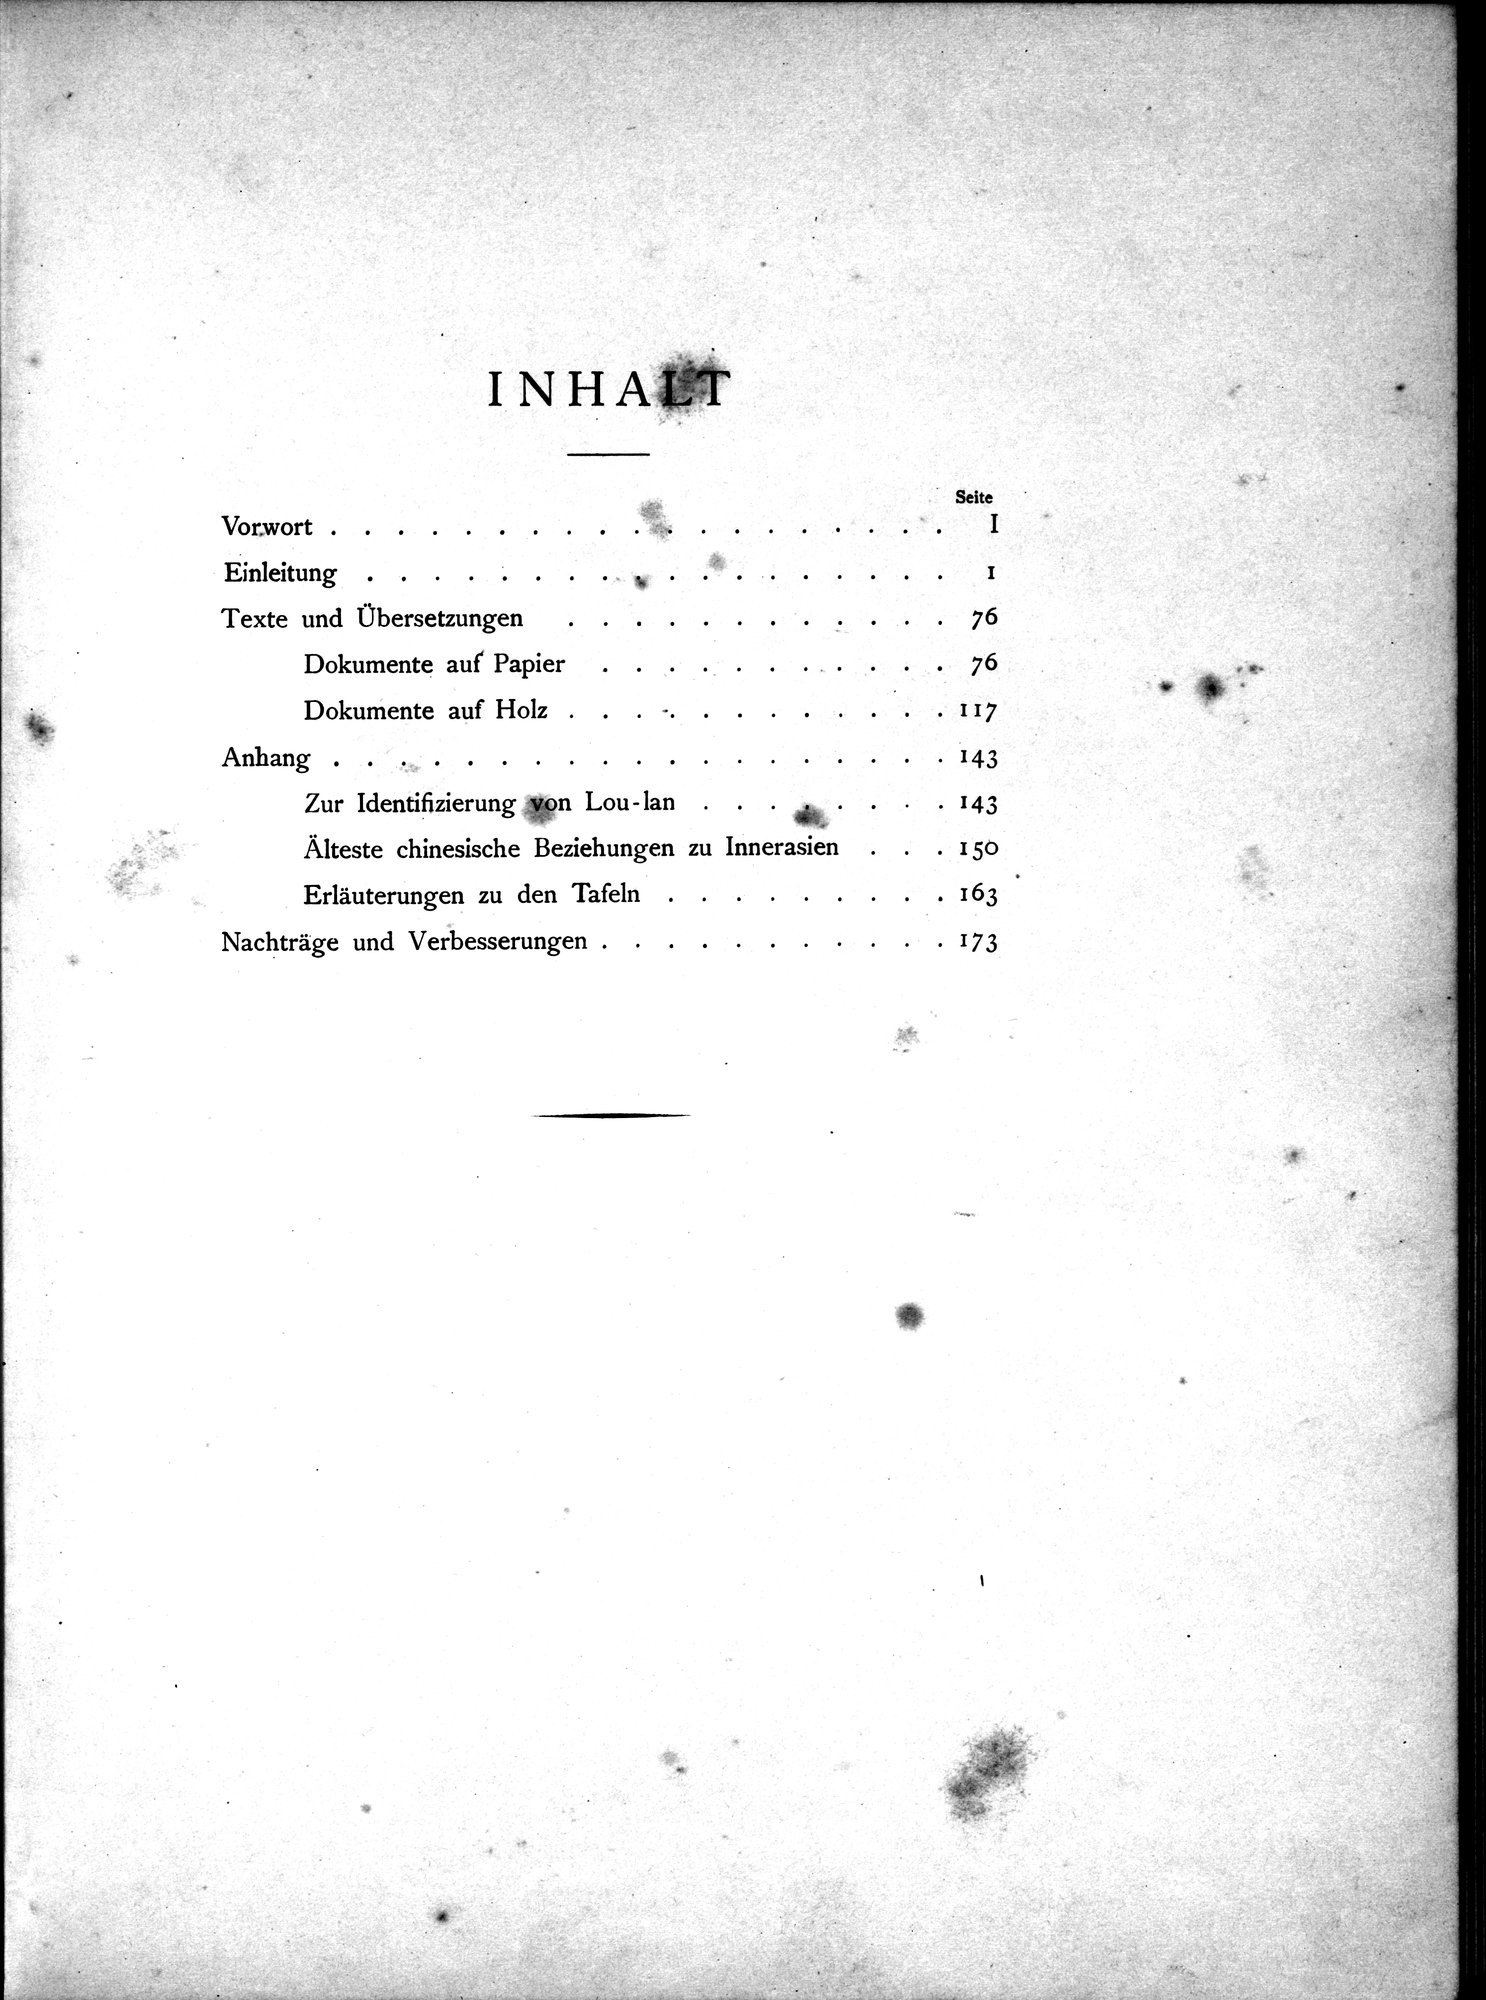 Die Chinesischen Handschriften- und sonstigen Kleinfunde Sven Hedins in Lou-lan : vol.1 / Page 15 (Grayscale High Resolution Image)